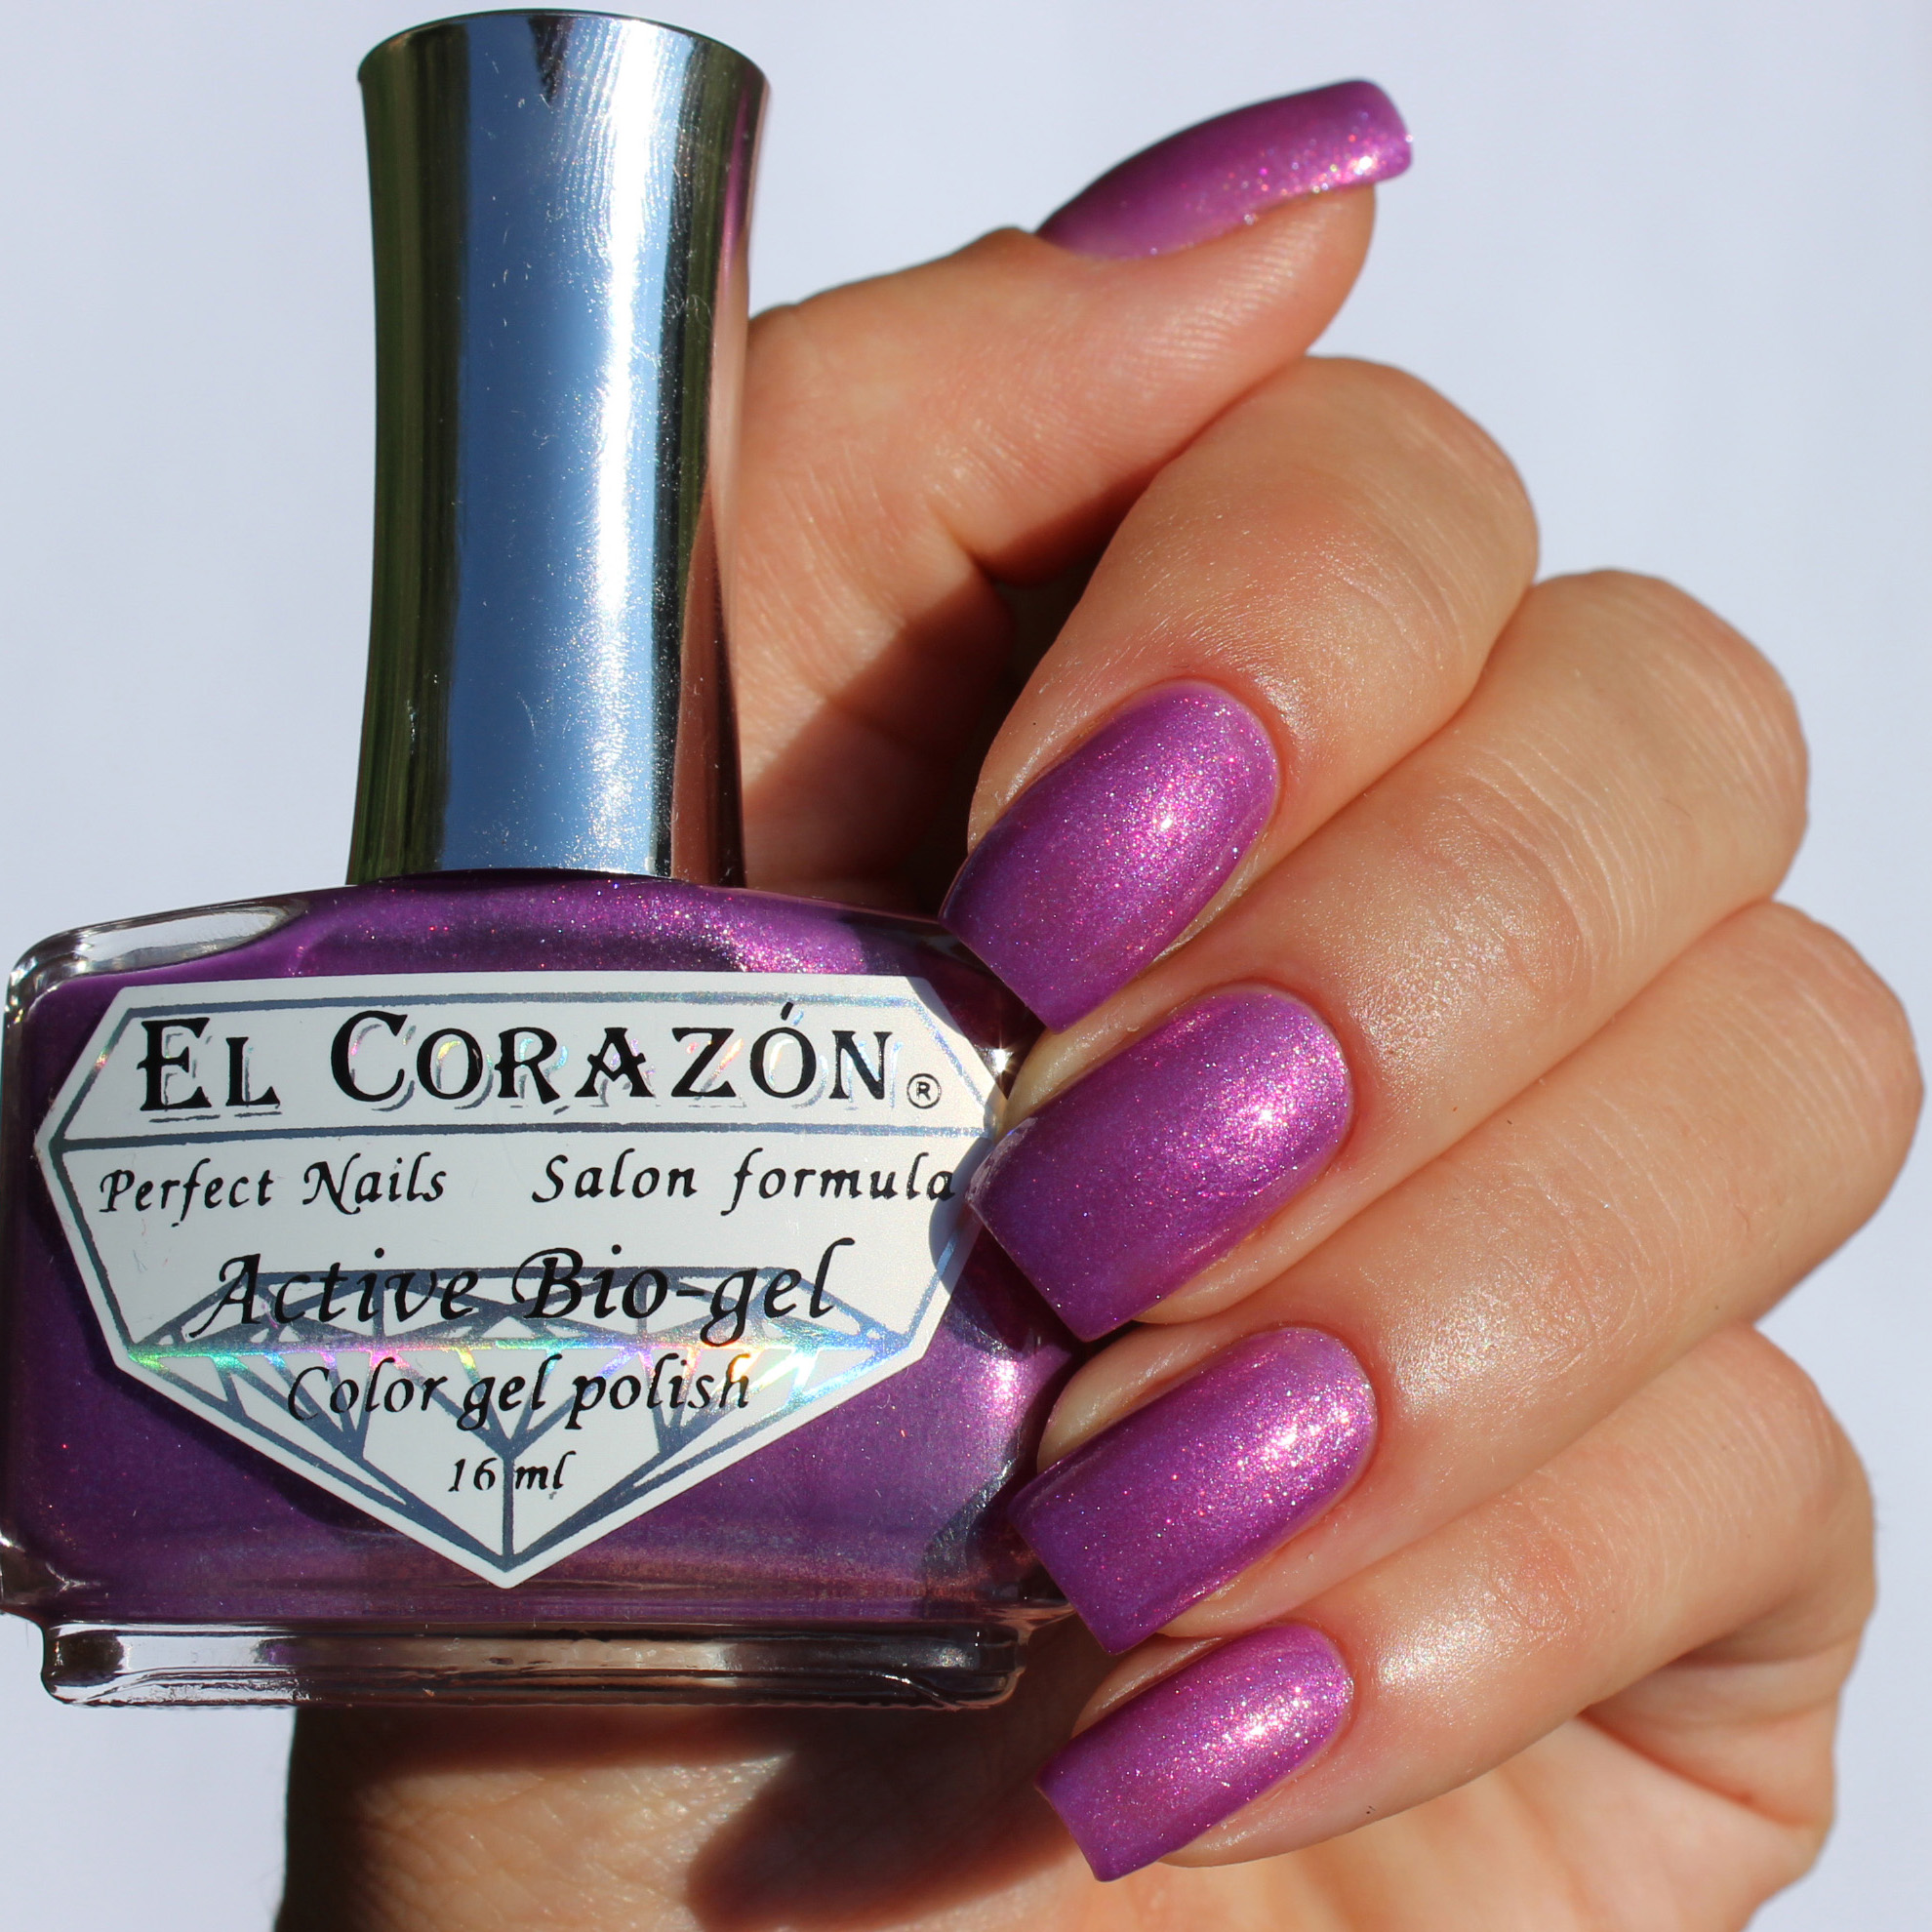 El Corazon Active Bio-gel № 423/552 Magic Purple Charm